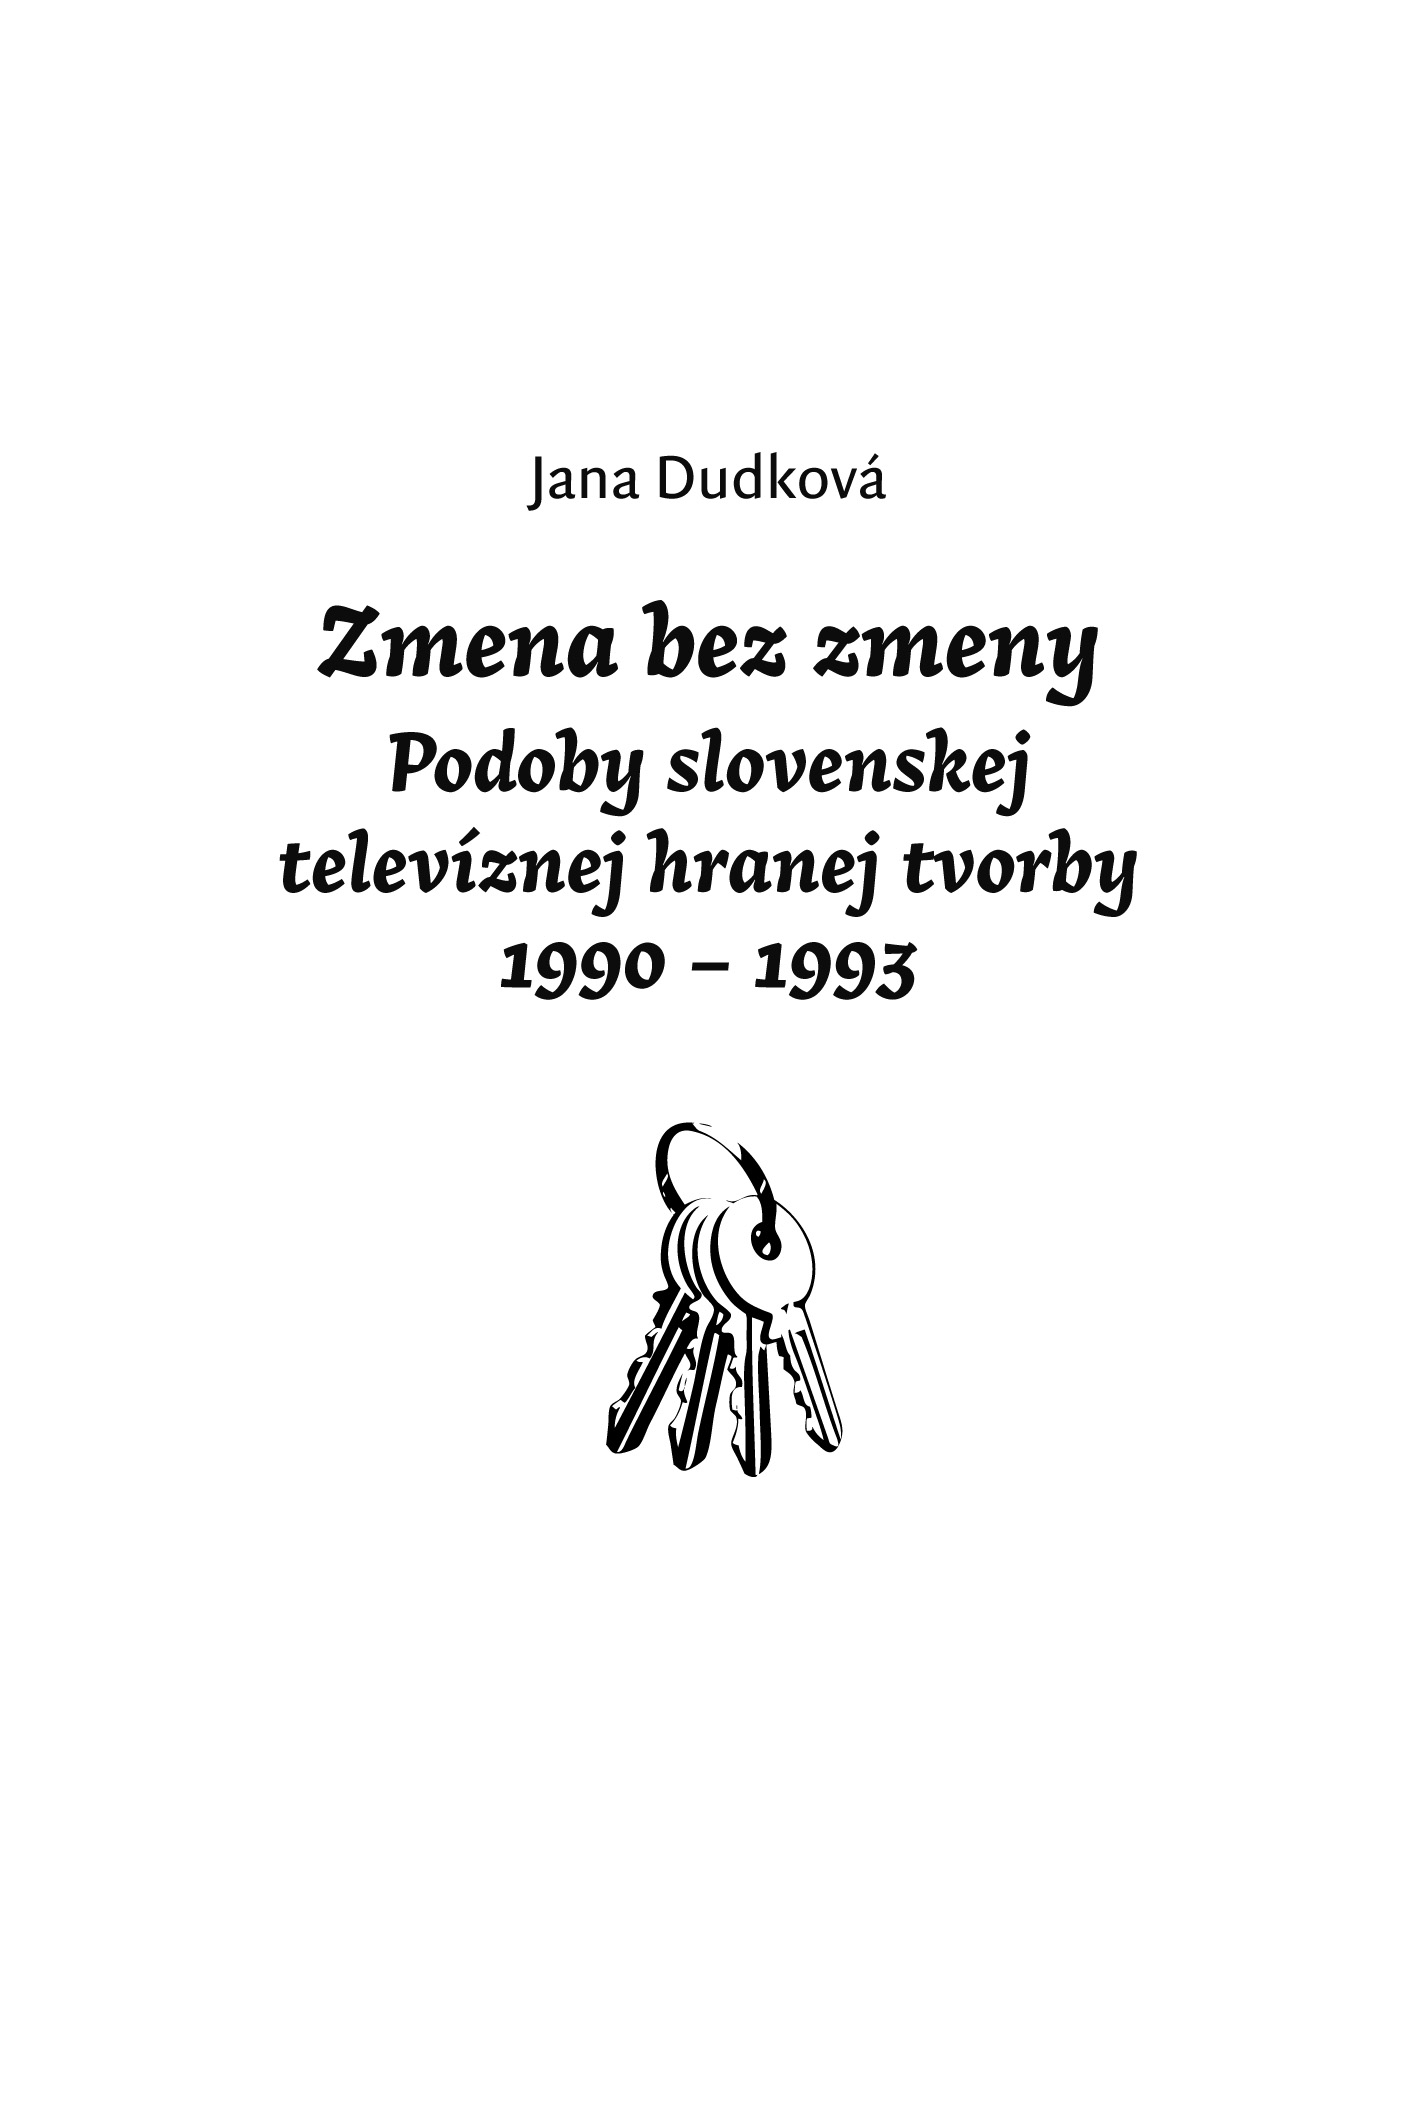 Zmena bez zmeny - Podoby slovenskej televíznej hranej tvorby 1990 - 1993